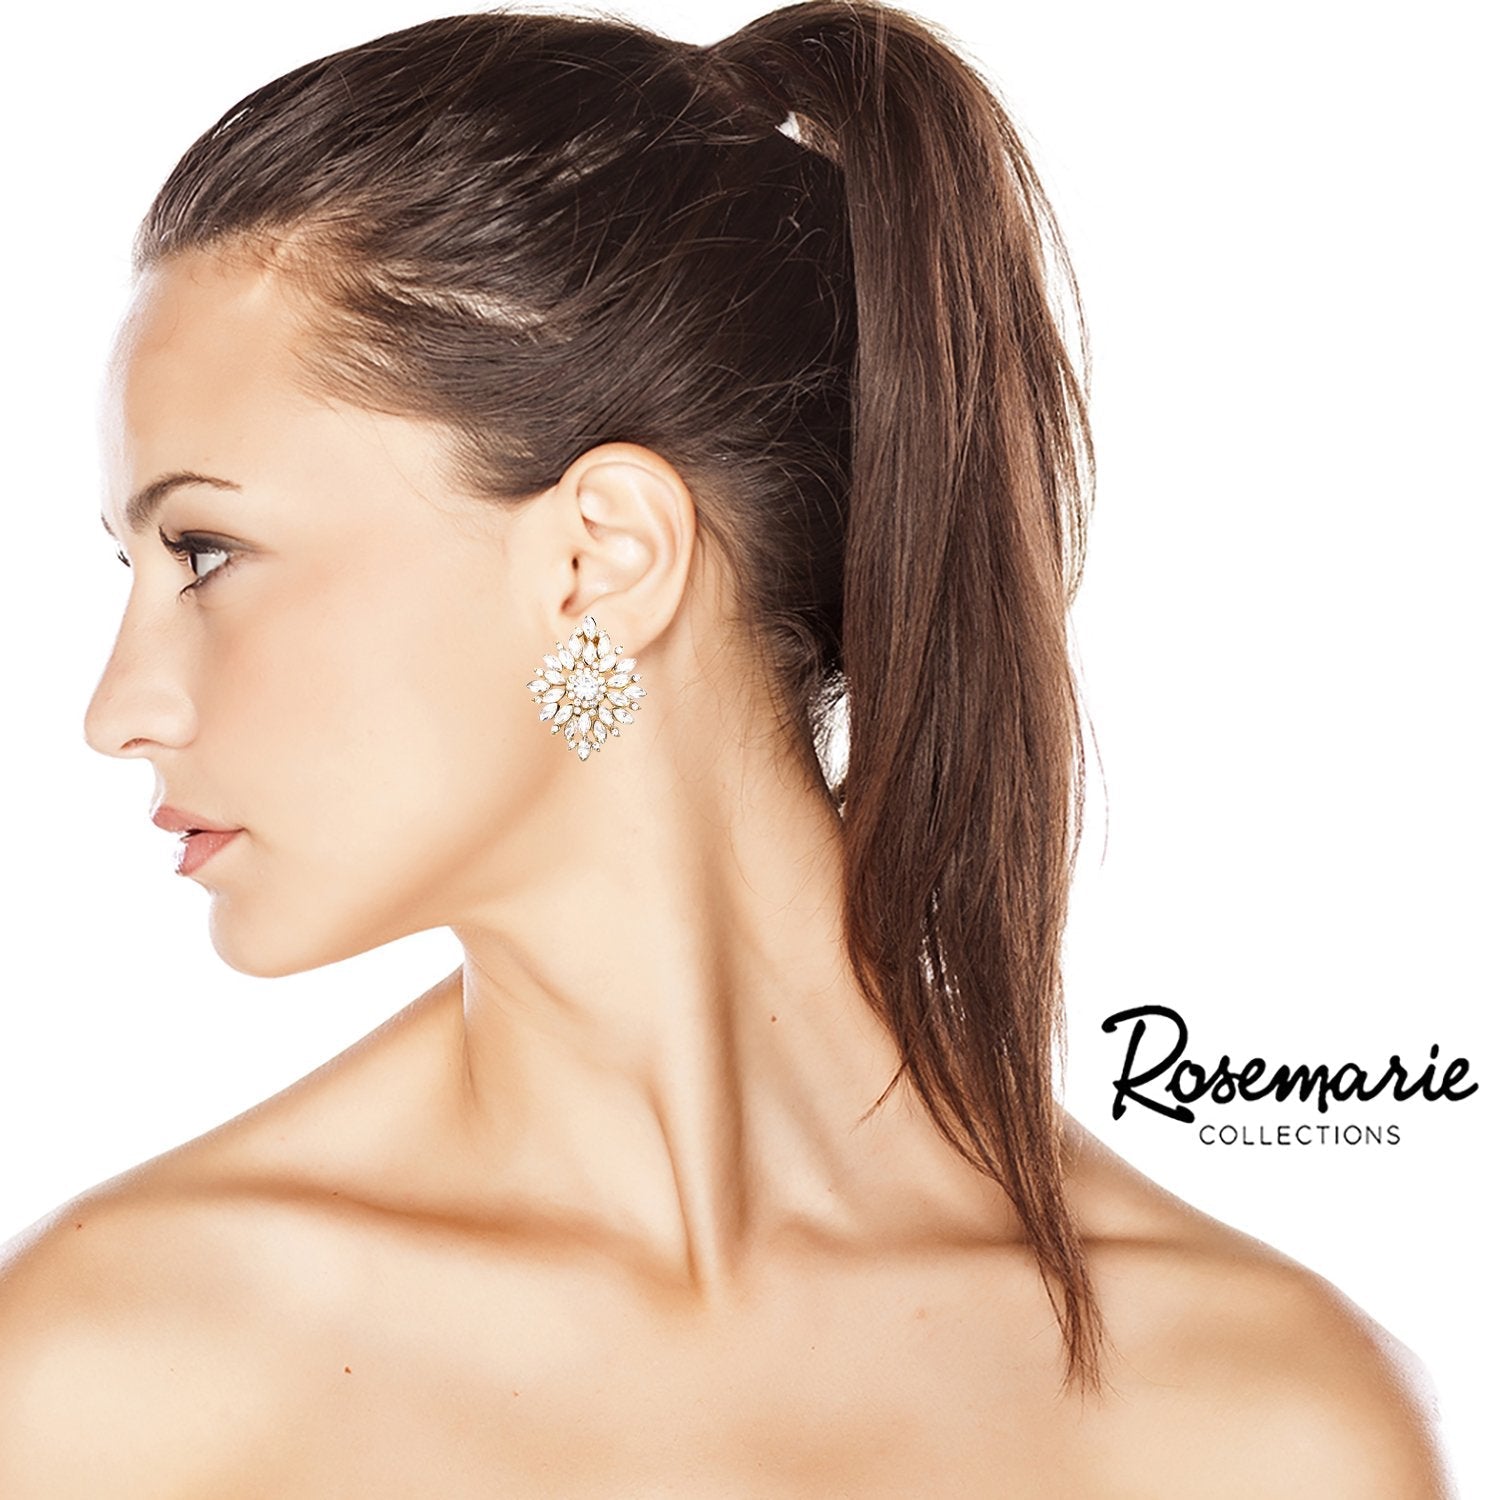 Women's Dazzling Gold Tone Crystal Rhinestone Flower Burst Clip On Earrings, 1.5"